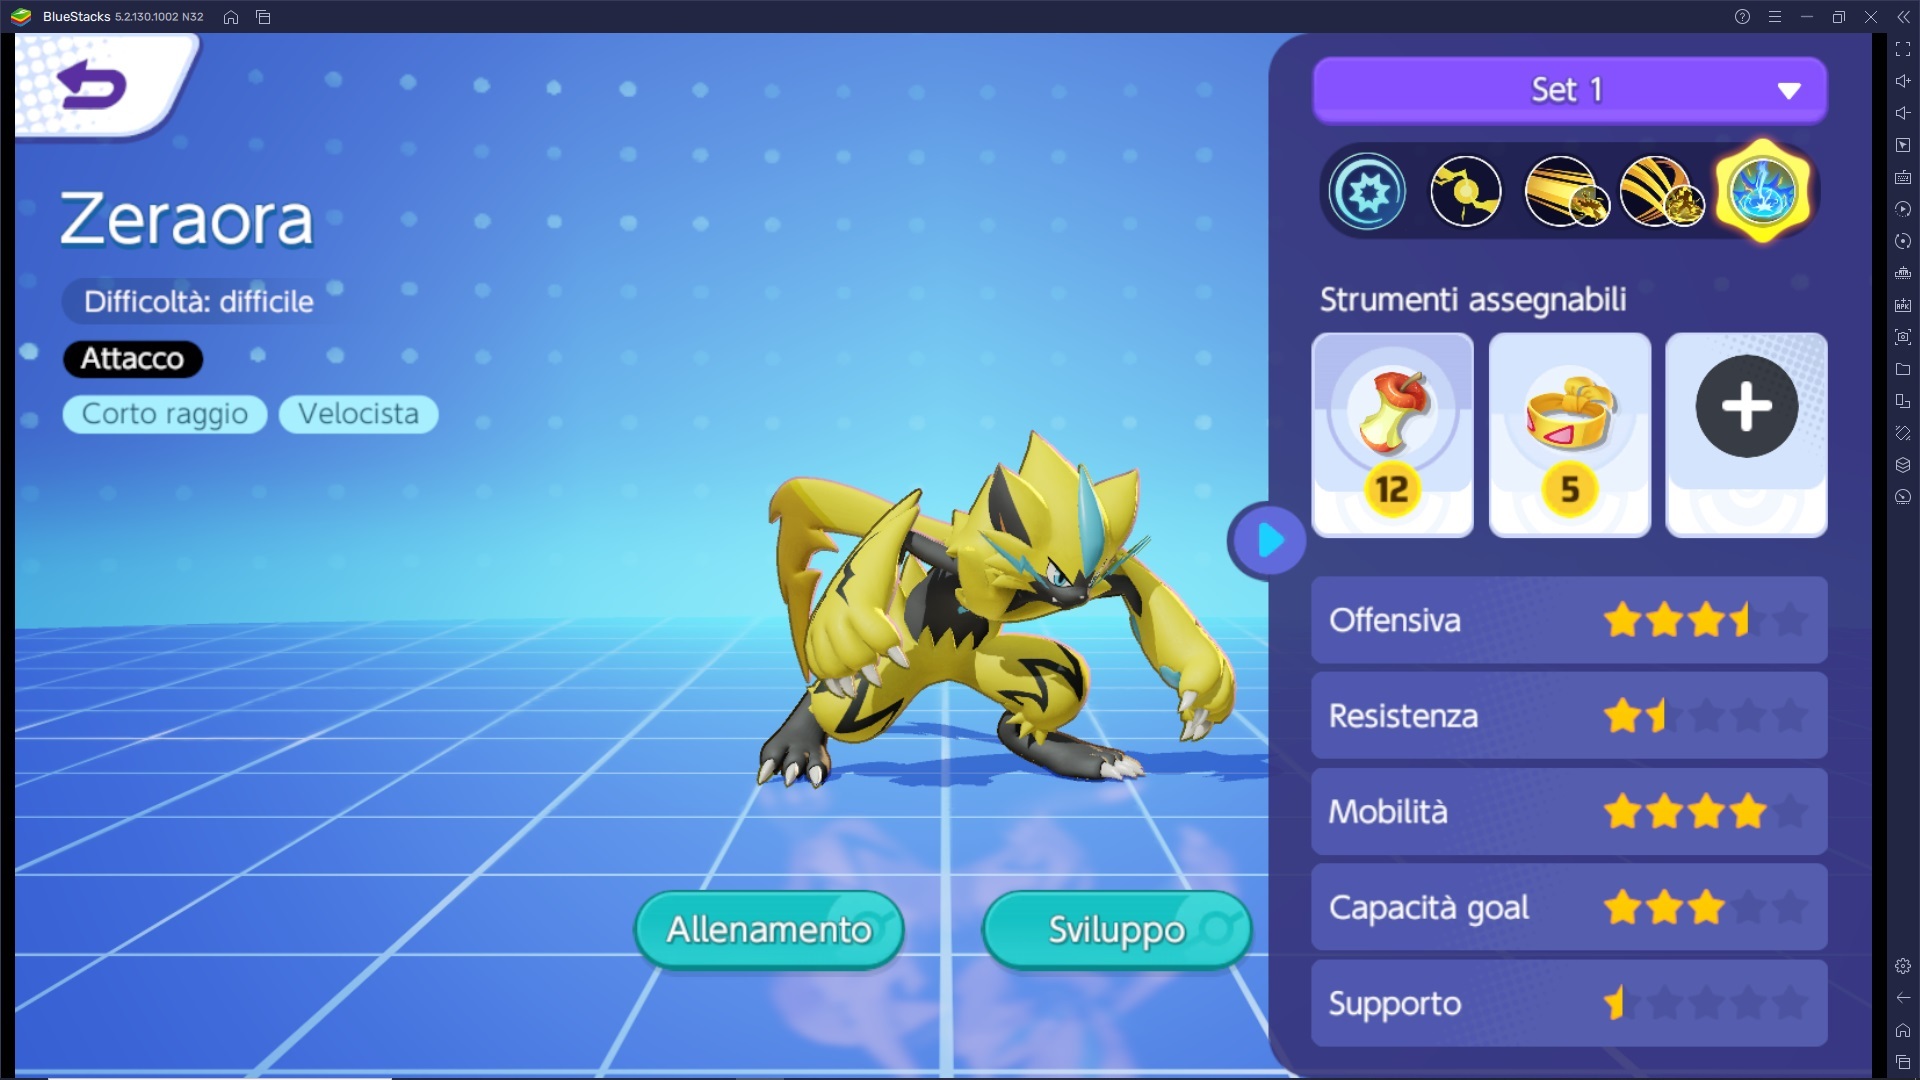 Come affrontare la Giungla (area centrale) in Pokémon UNITE con un pokémon velocista